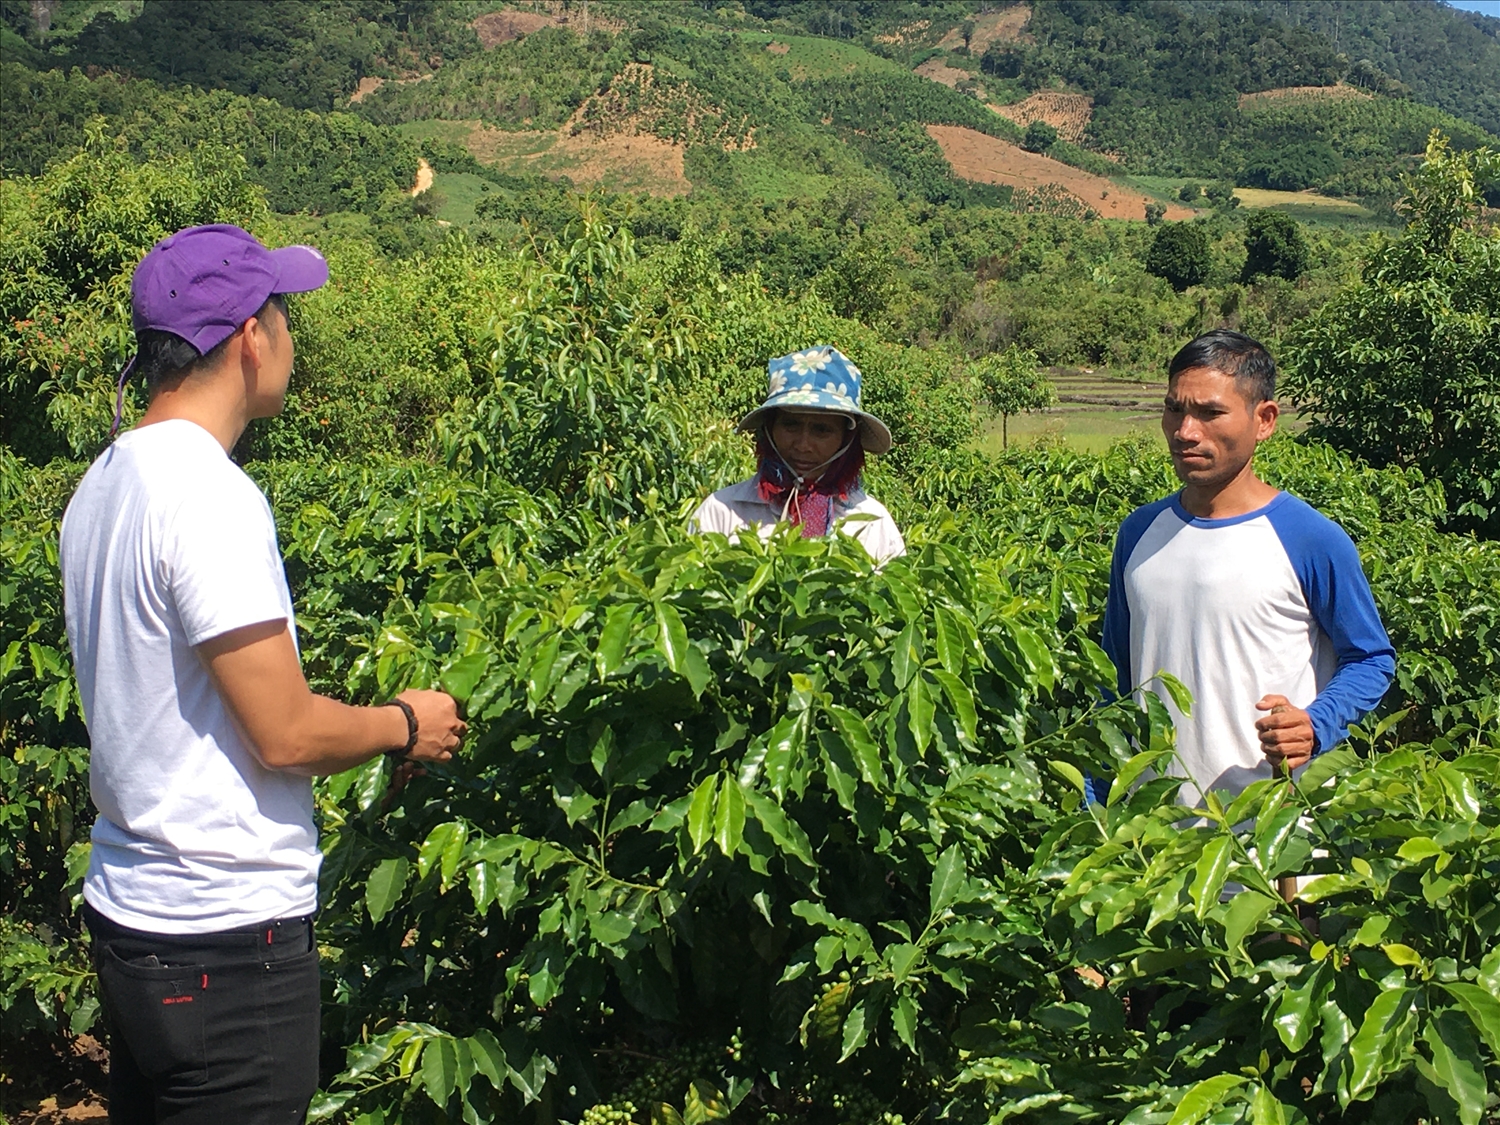 Cán bộ khuyến nông hướng dẫn người dân cách chăm sóc cây cà phê xứ lạnh.